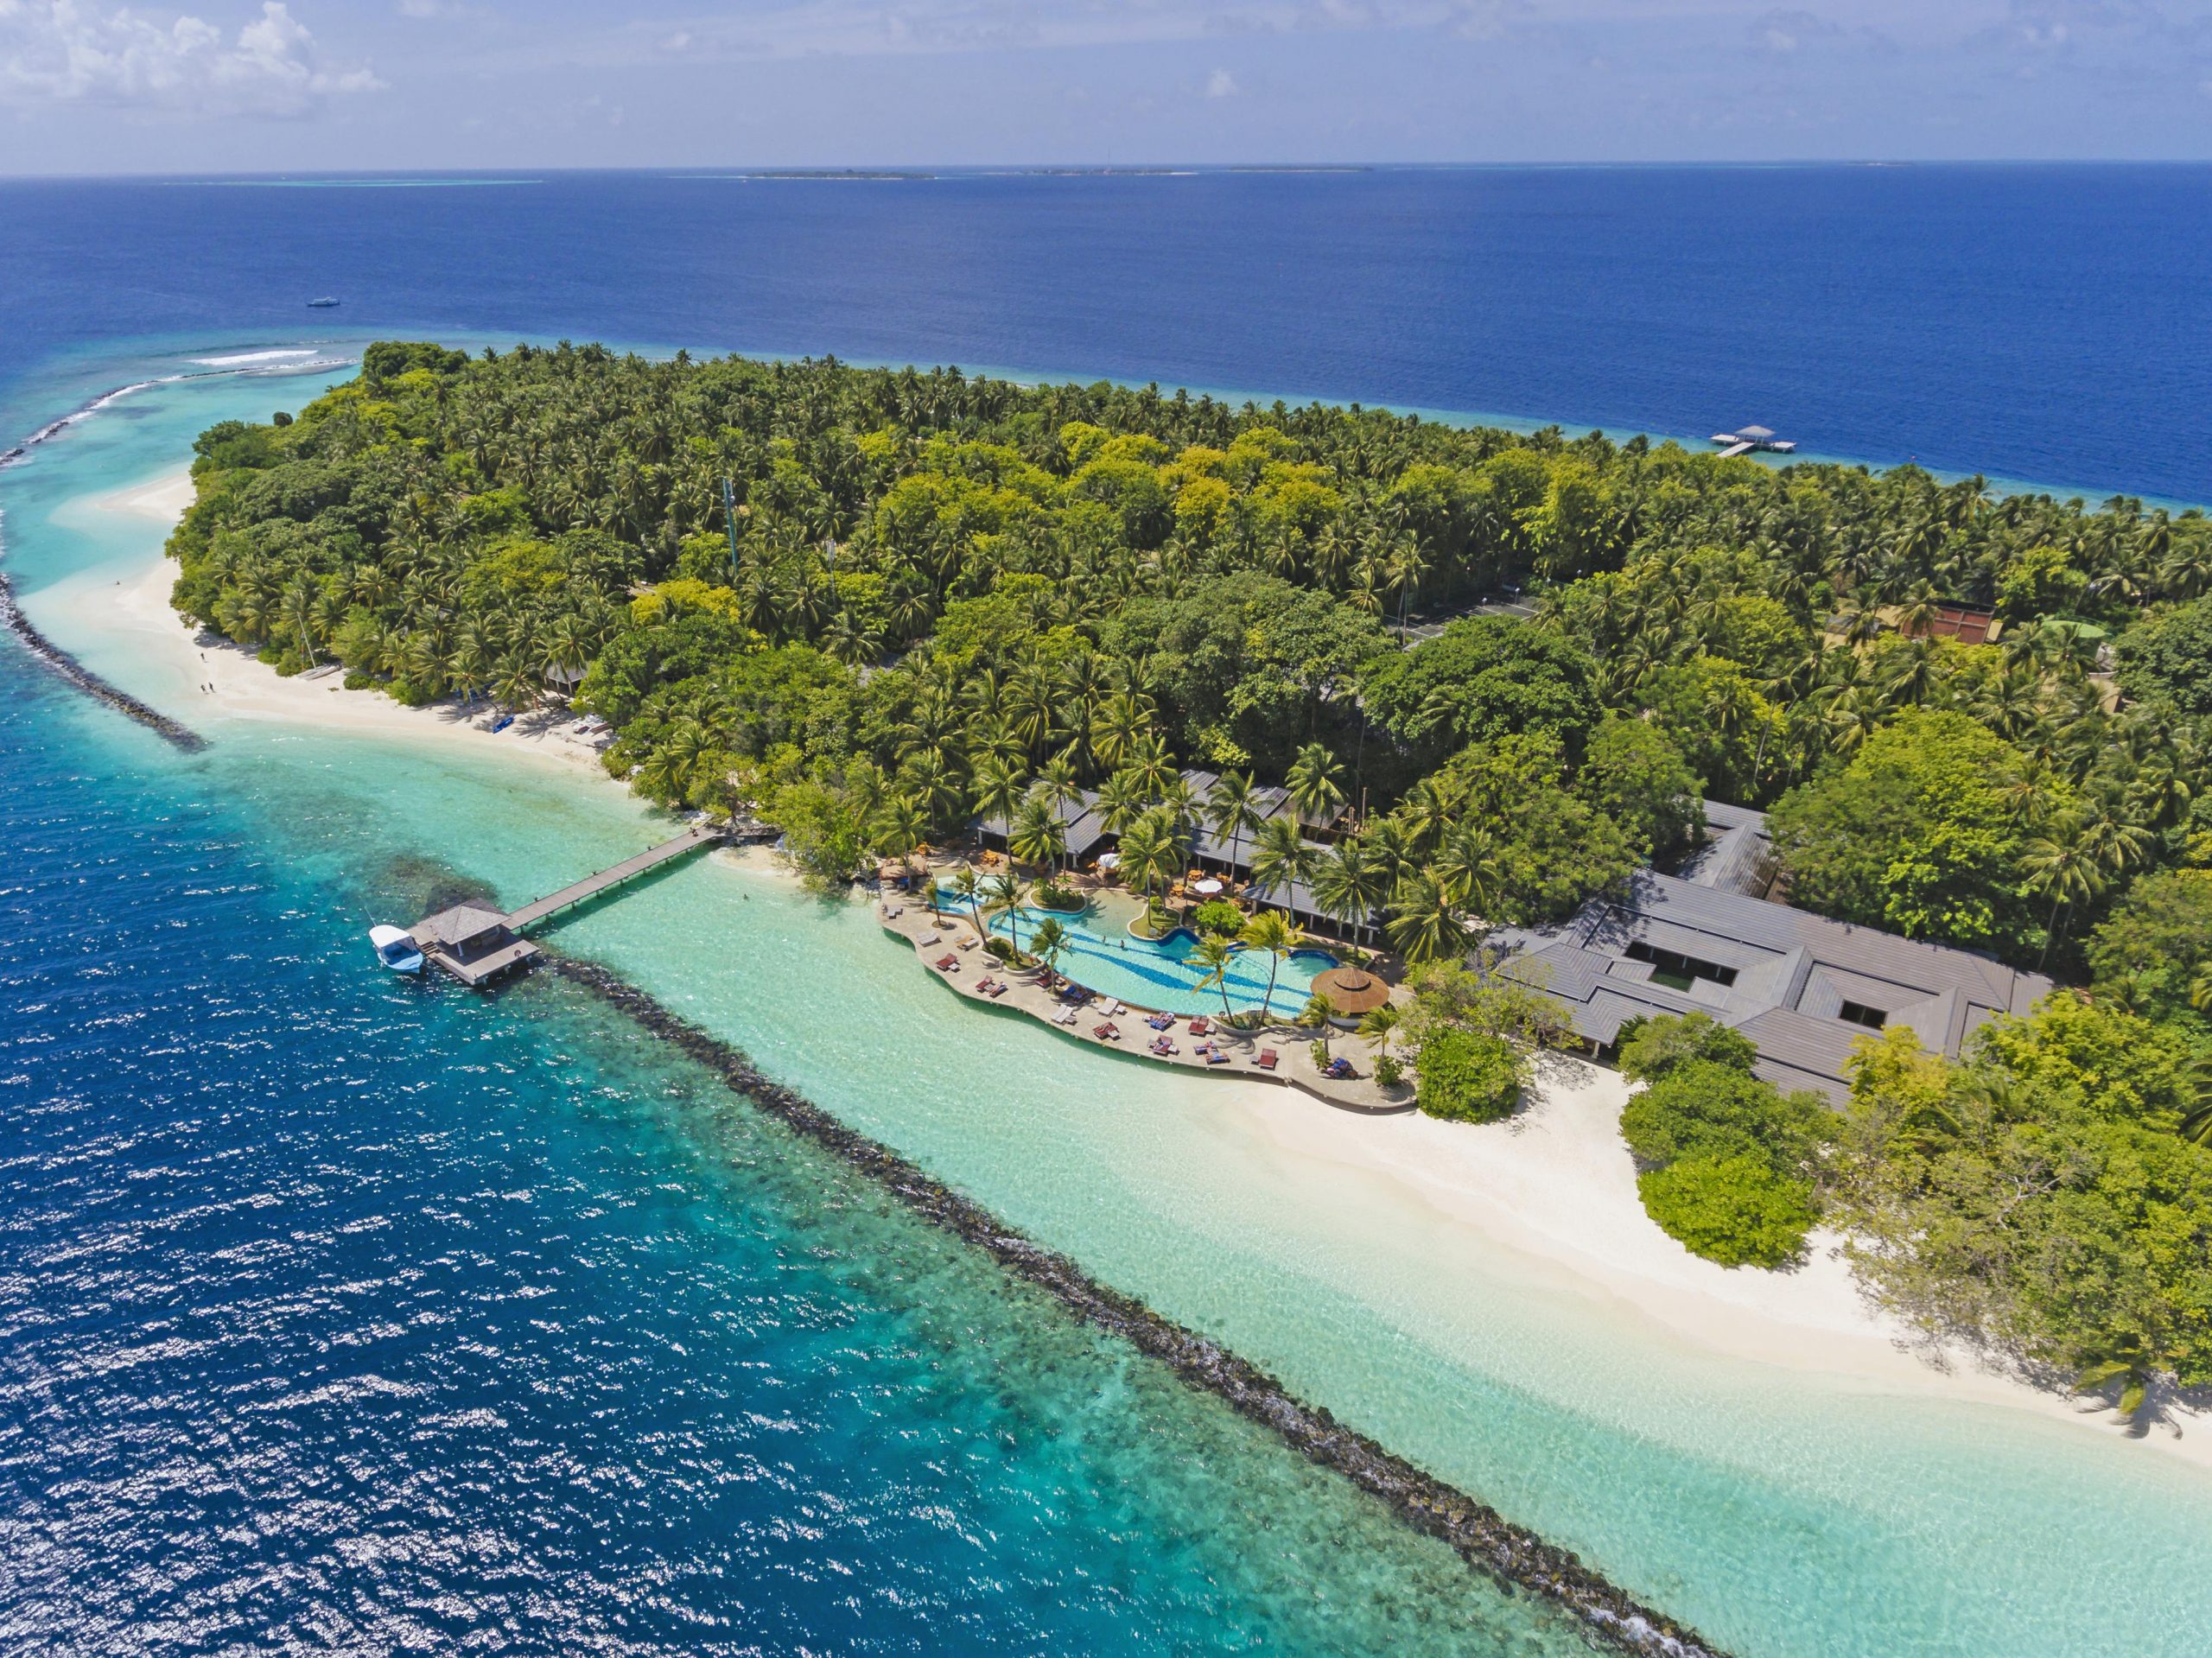 ROYAL ISLAND RESORT & SPA - описание отеля на Мальдивах